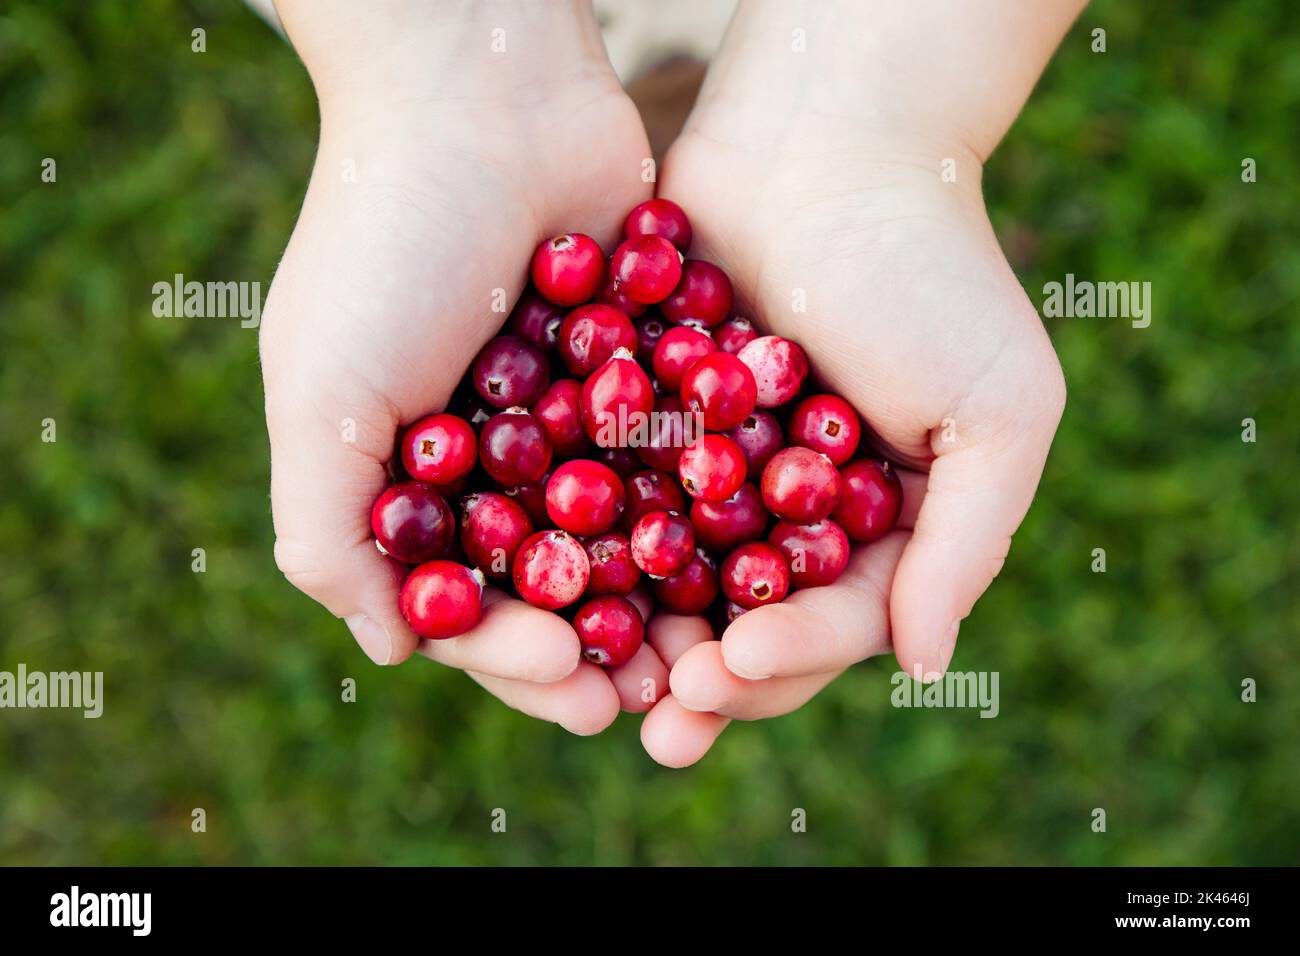 Ansicht von Kinderhänden, die einen Haufen frischer roter Cranberries halten, die als Vaccinium oxycoccos oder aus dem Sumpf geerntet werden. Gesunder Snack. Stockfoto